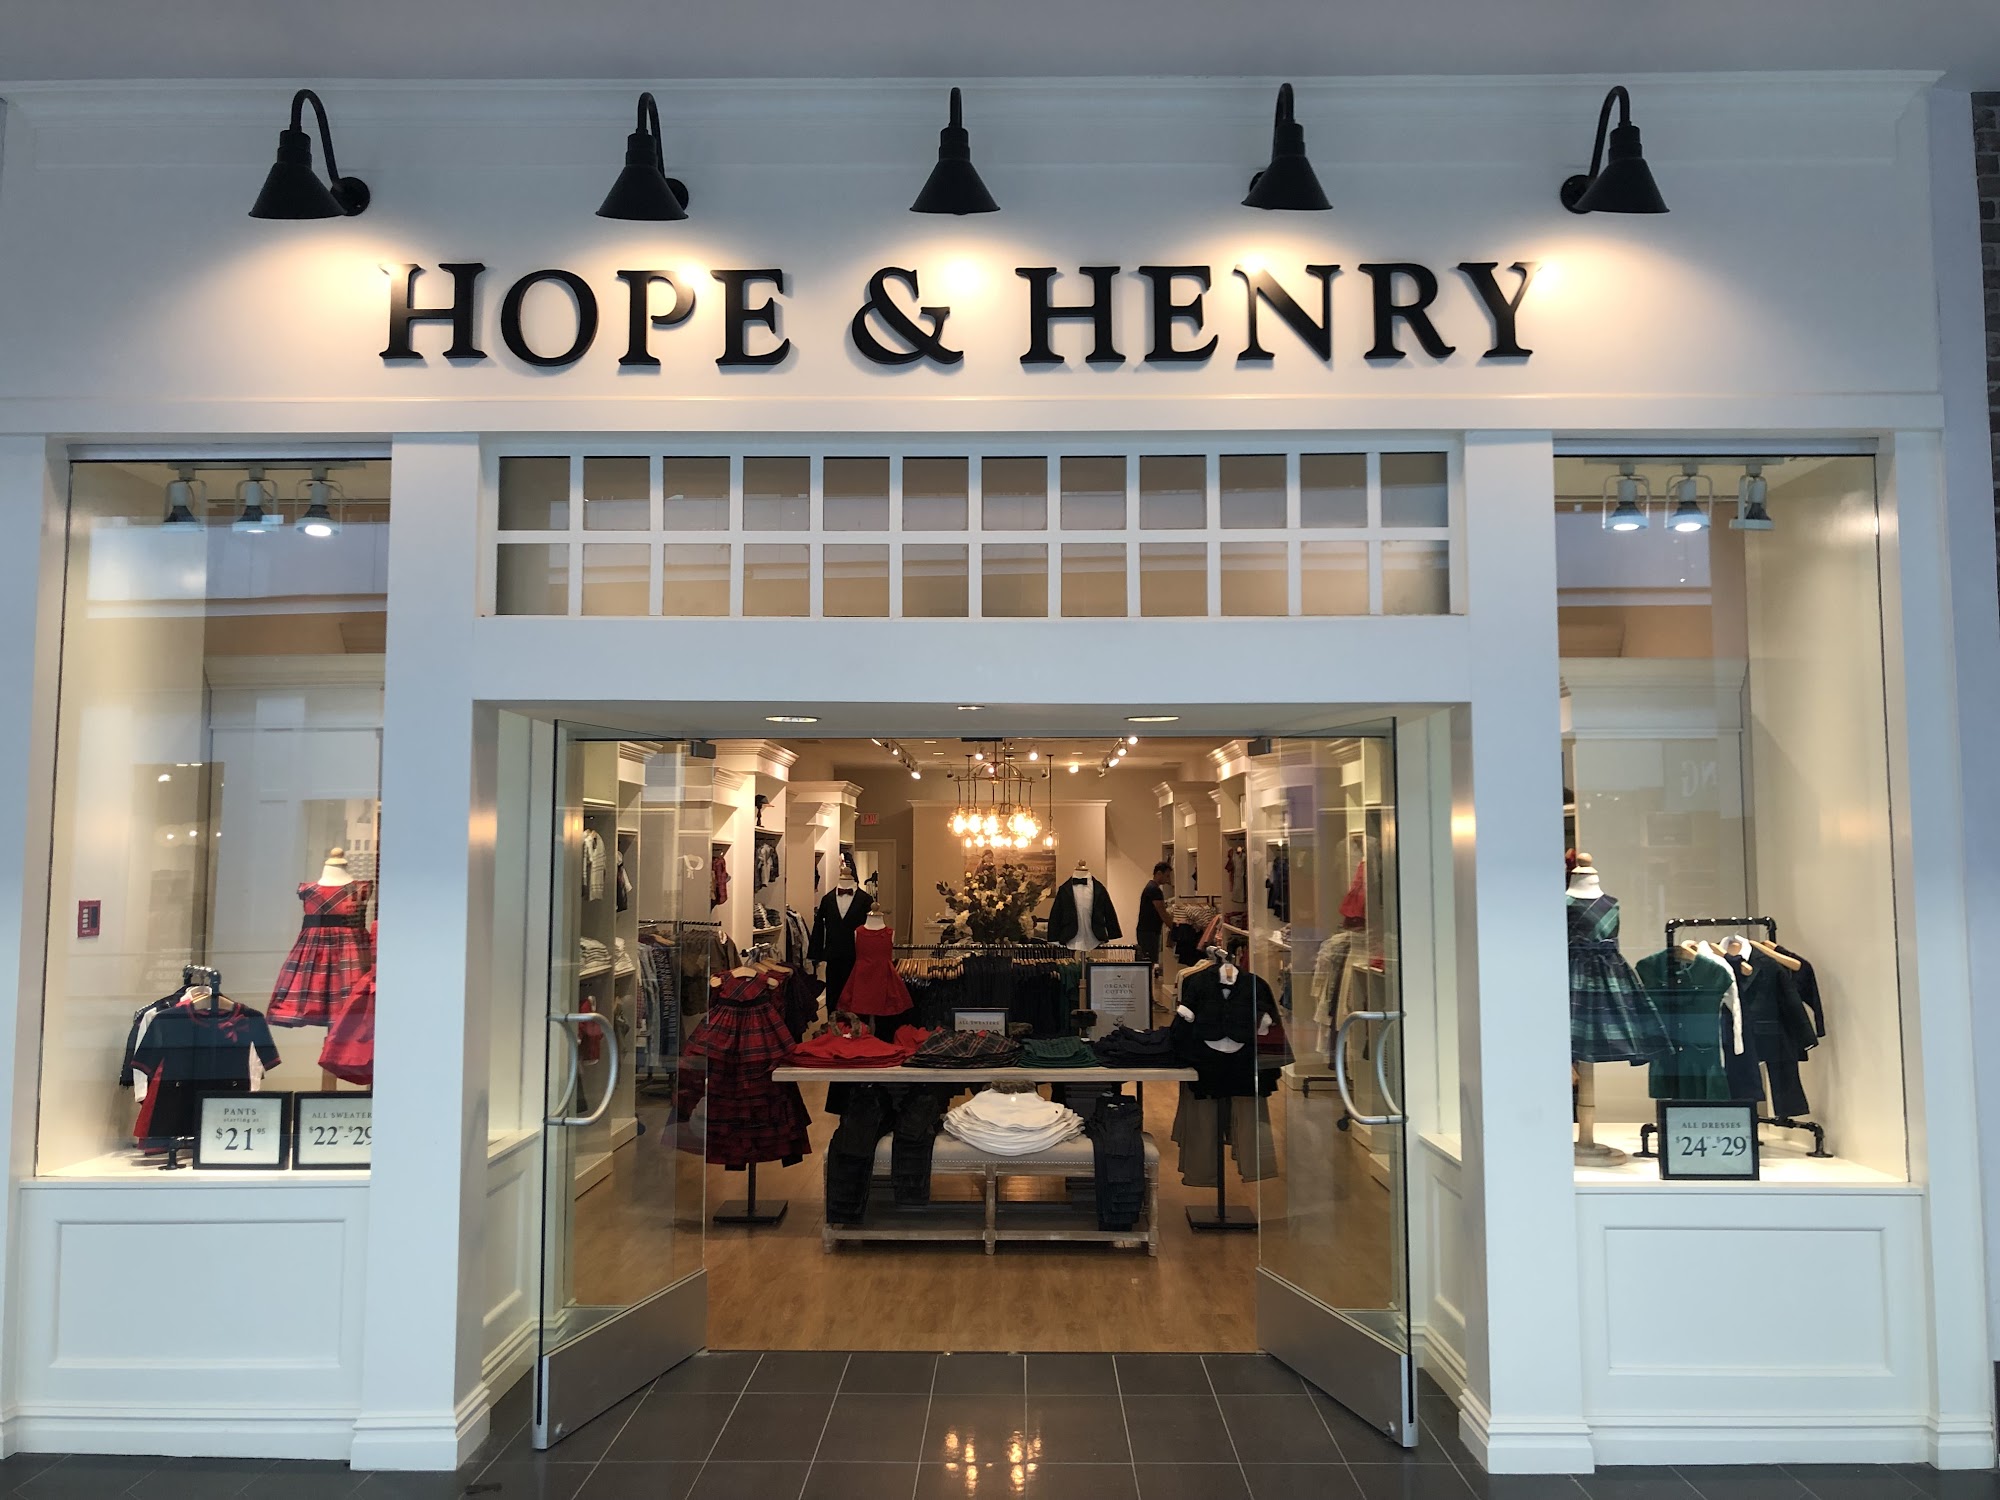 Hope & Henry